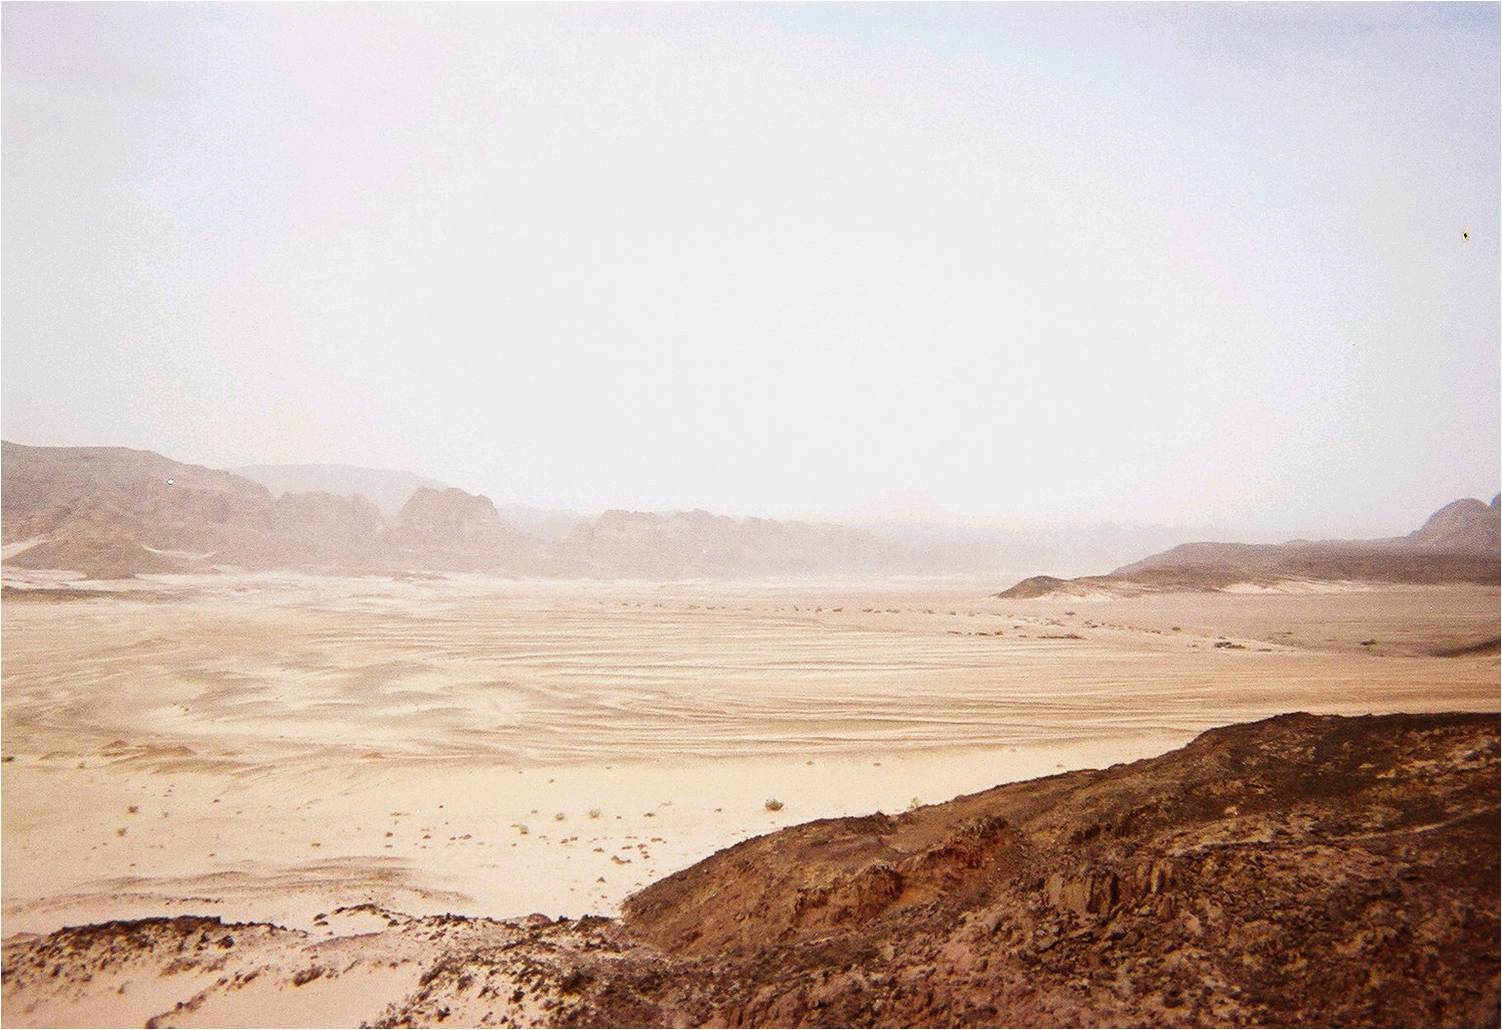 Crossing Sinai desert, Egypt